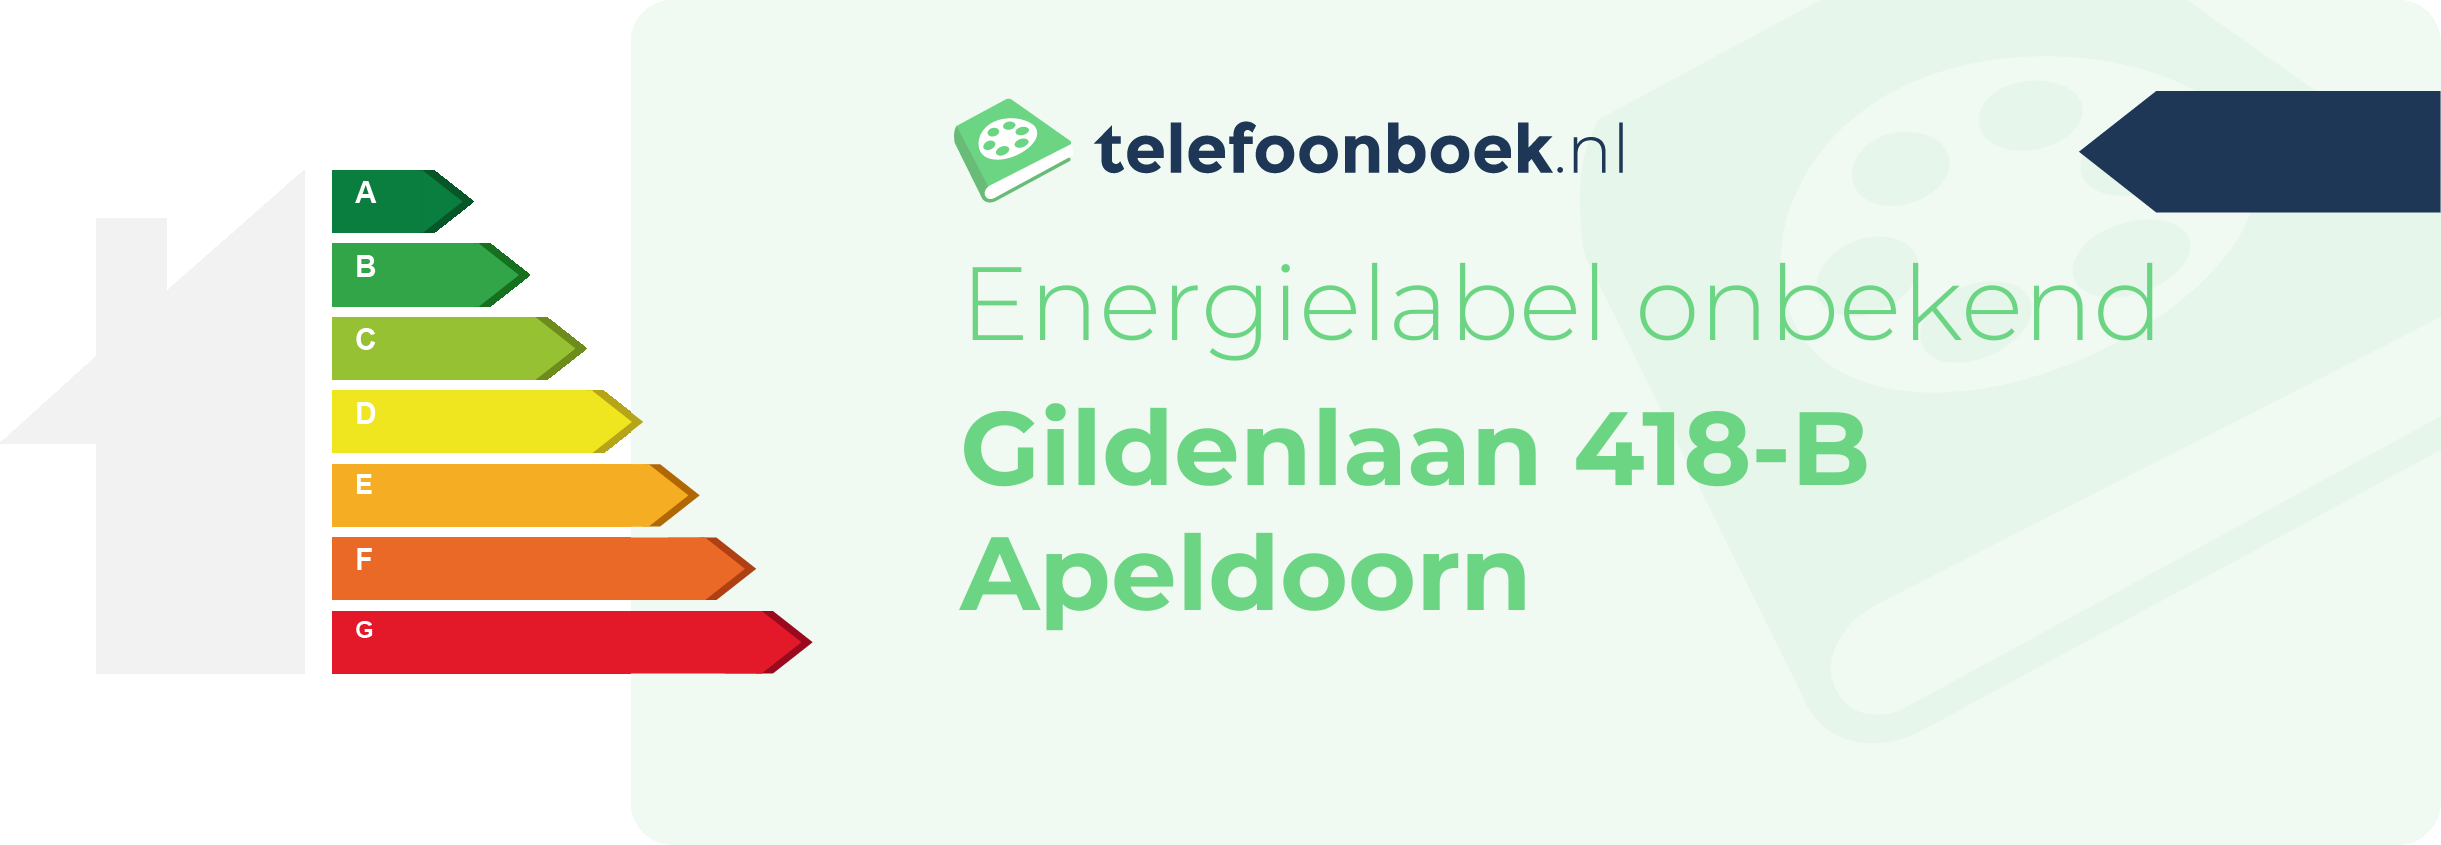 Energielabel Gildenlaan 418-B Apeldoorn